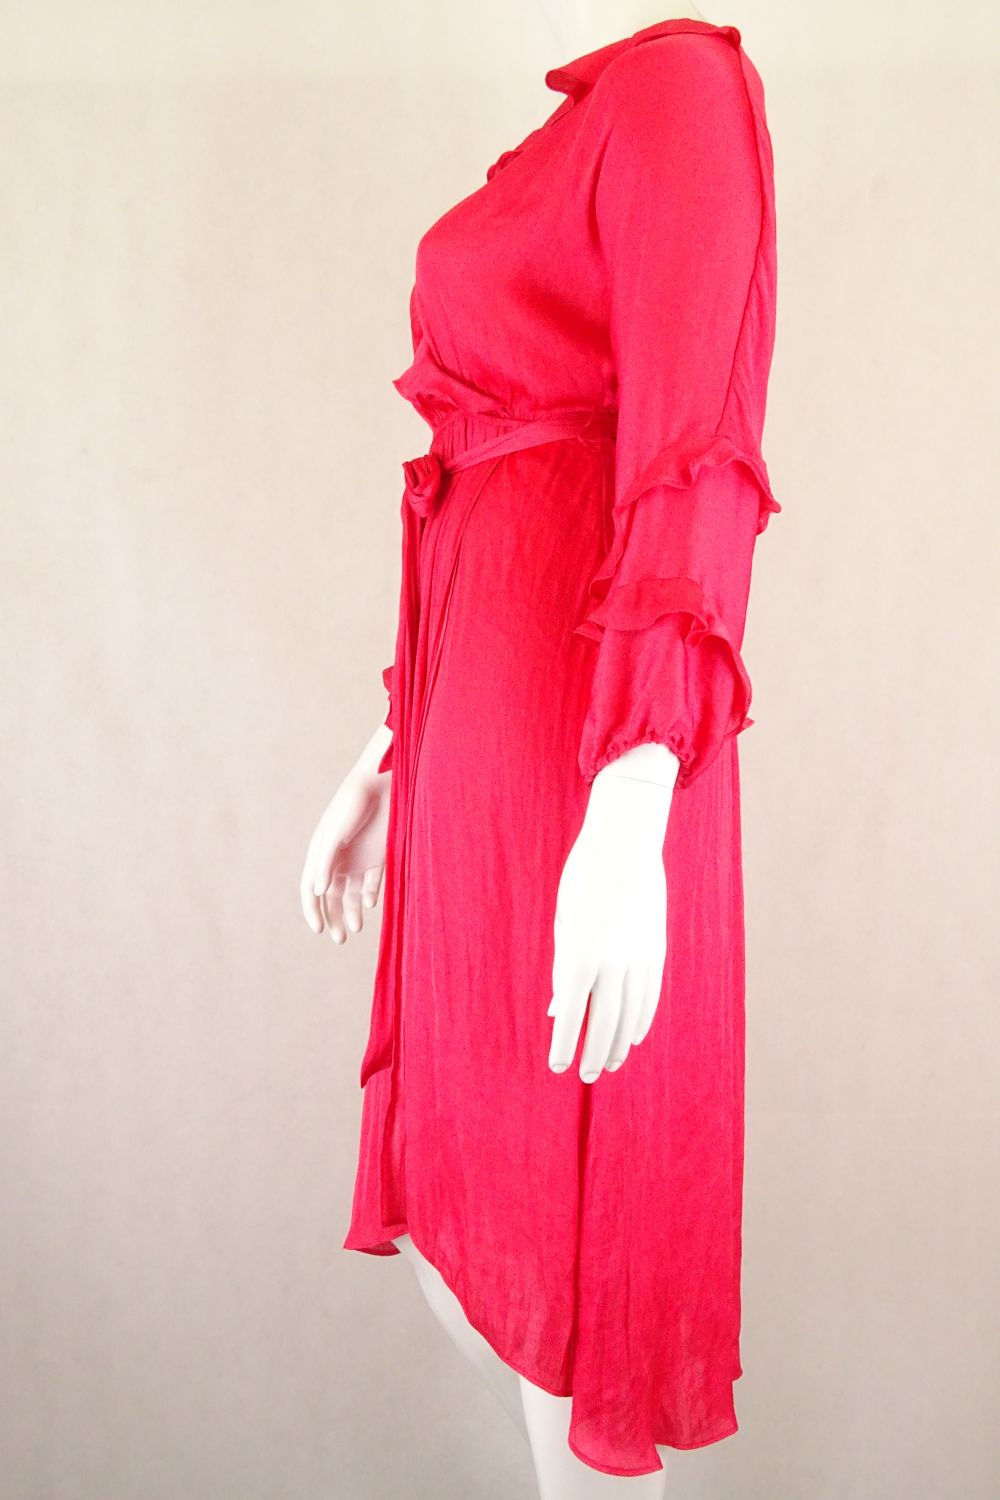 Leona By Leona Edmiston Red Dress 14